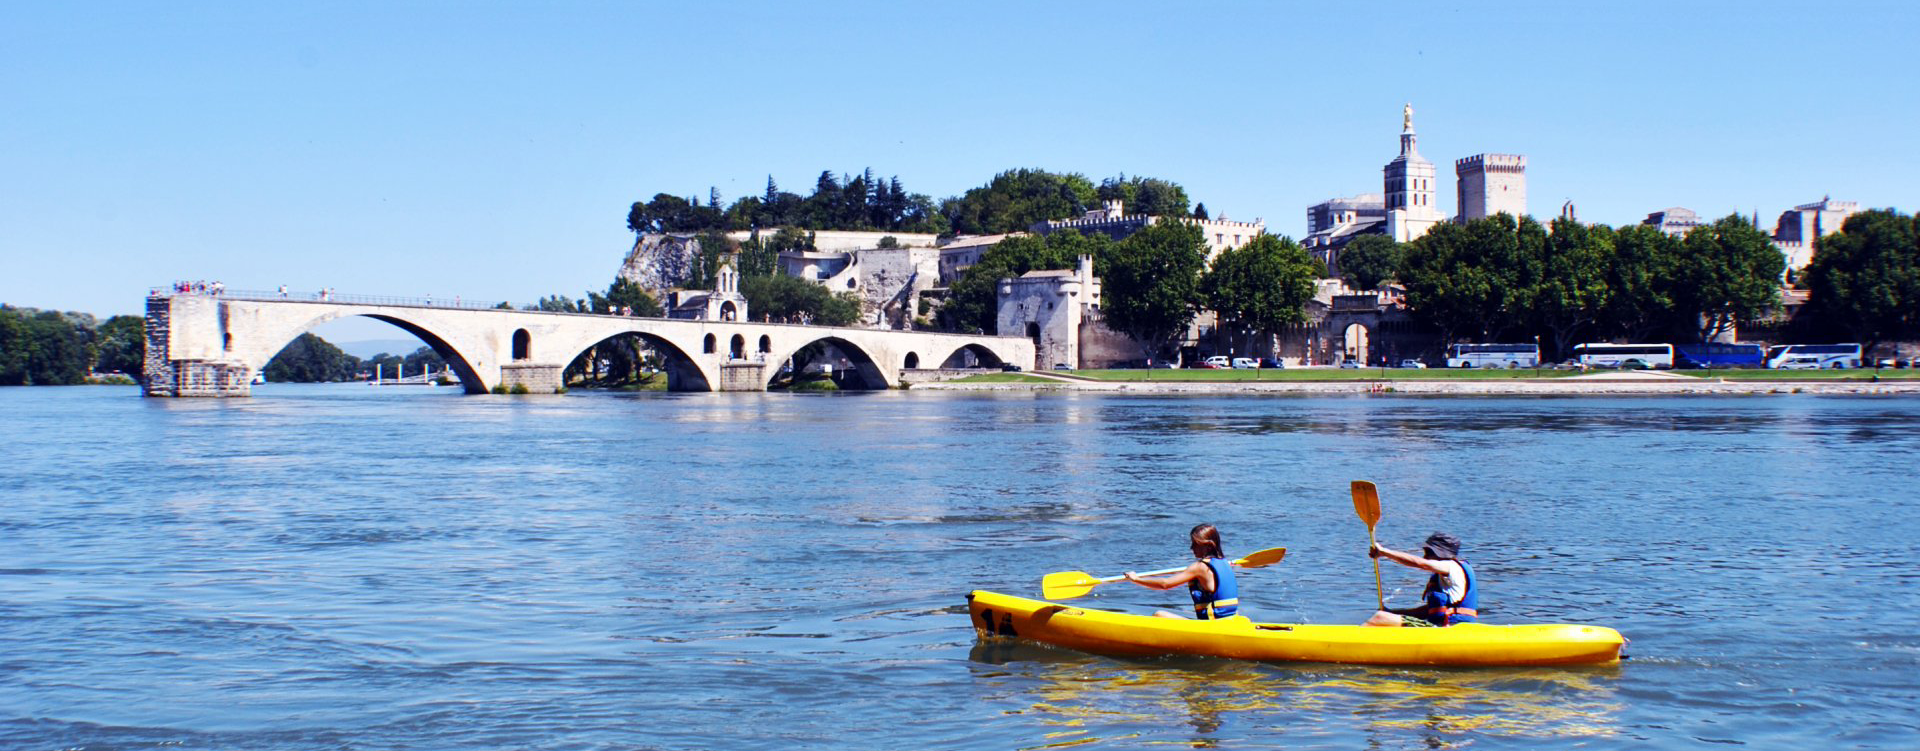 Location Sous le Pont d'Avignon